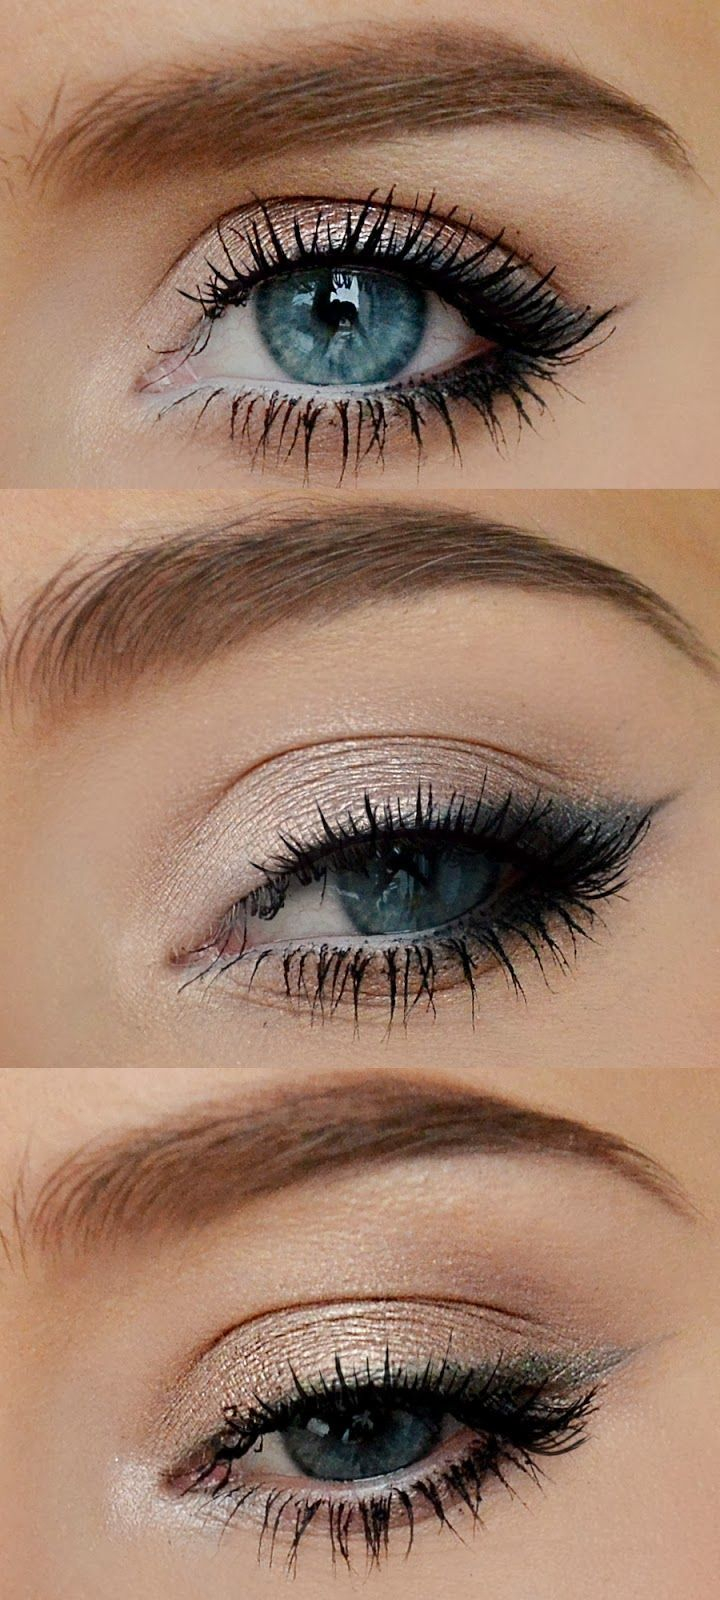 Best Eye Makeup For Blue Eyes 4 Pasos Para Tener Pestaas Fabulosas Make Up Pinterest Make